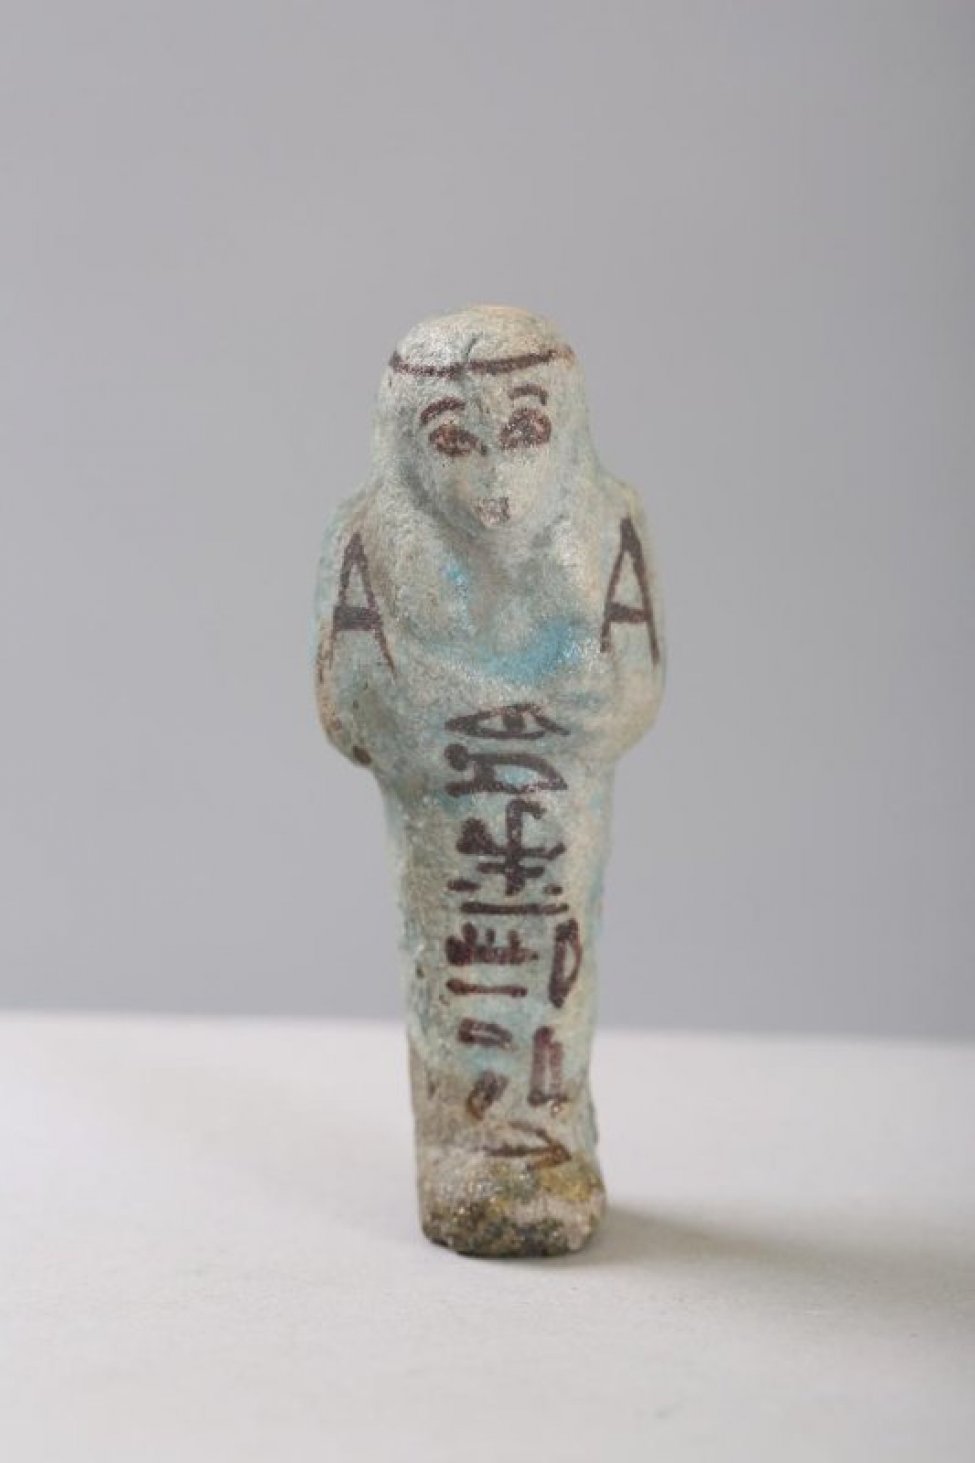 Изображена фигурка человека в виде запеленутой мумии с нарисованными глазами и иероглифами на туловище.